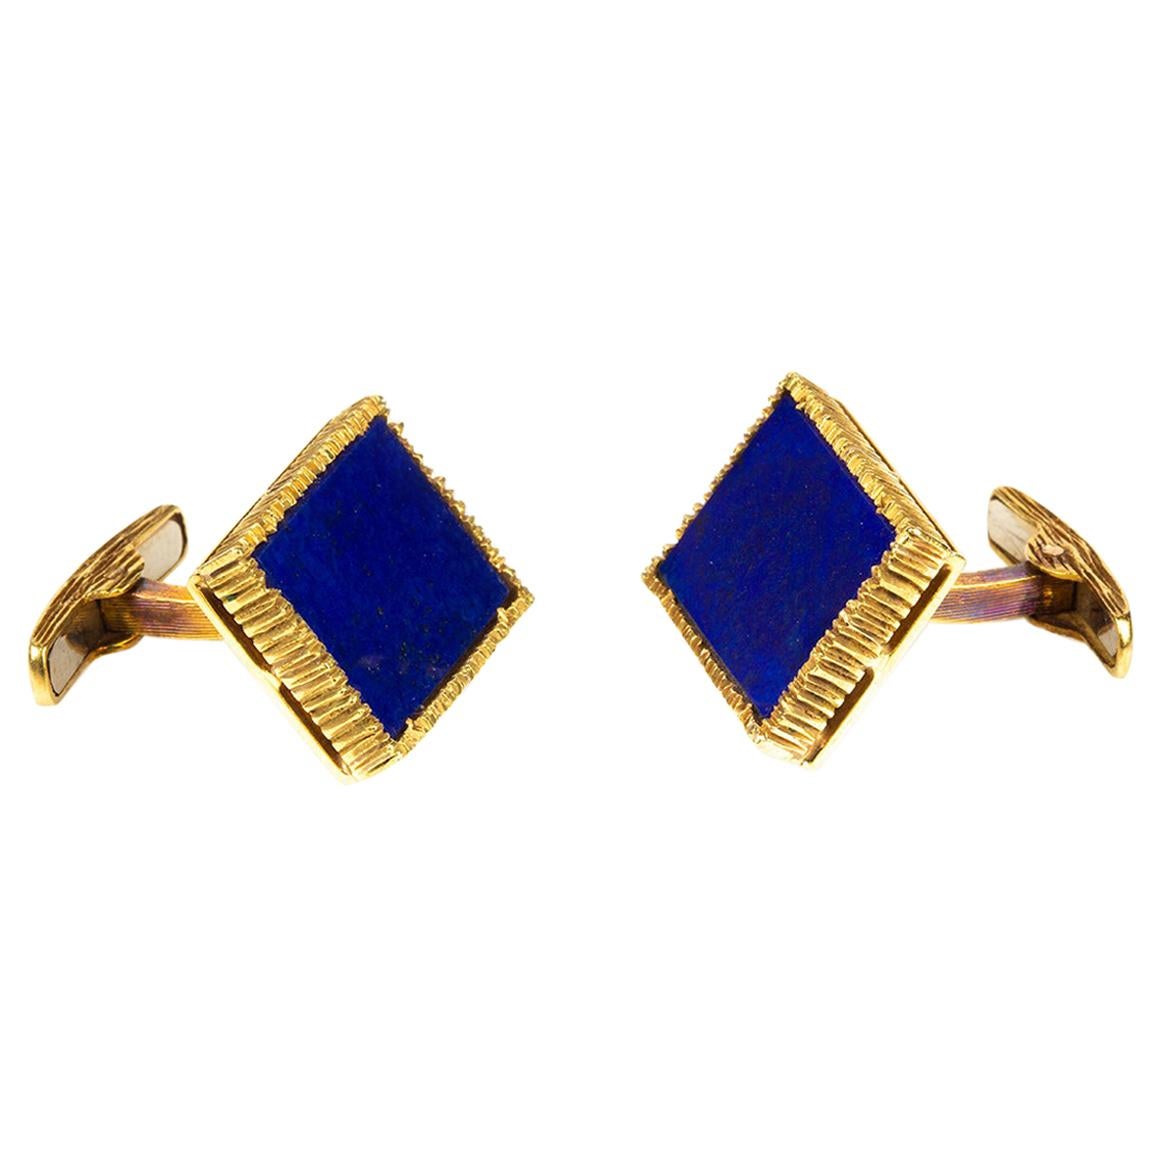 Van Cleef & Arpels Cufflinks, 18 Karat Gold & Natural Lapis Lazuli, French, 1965